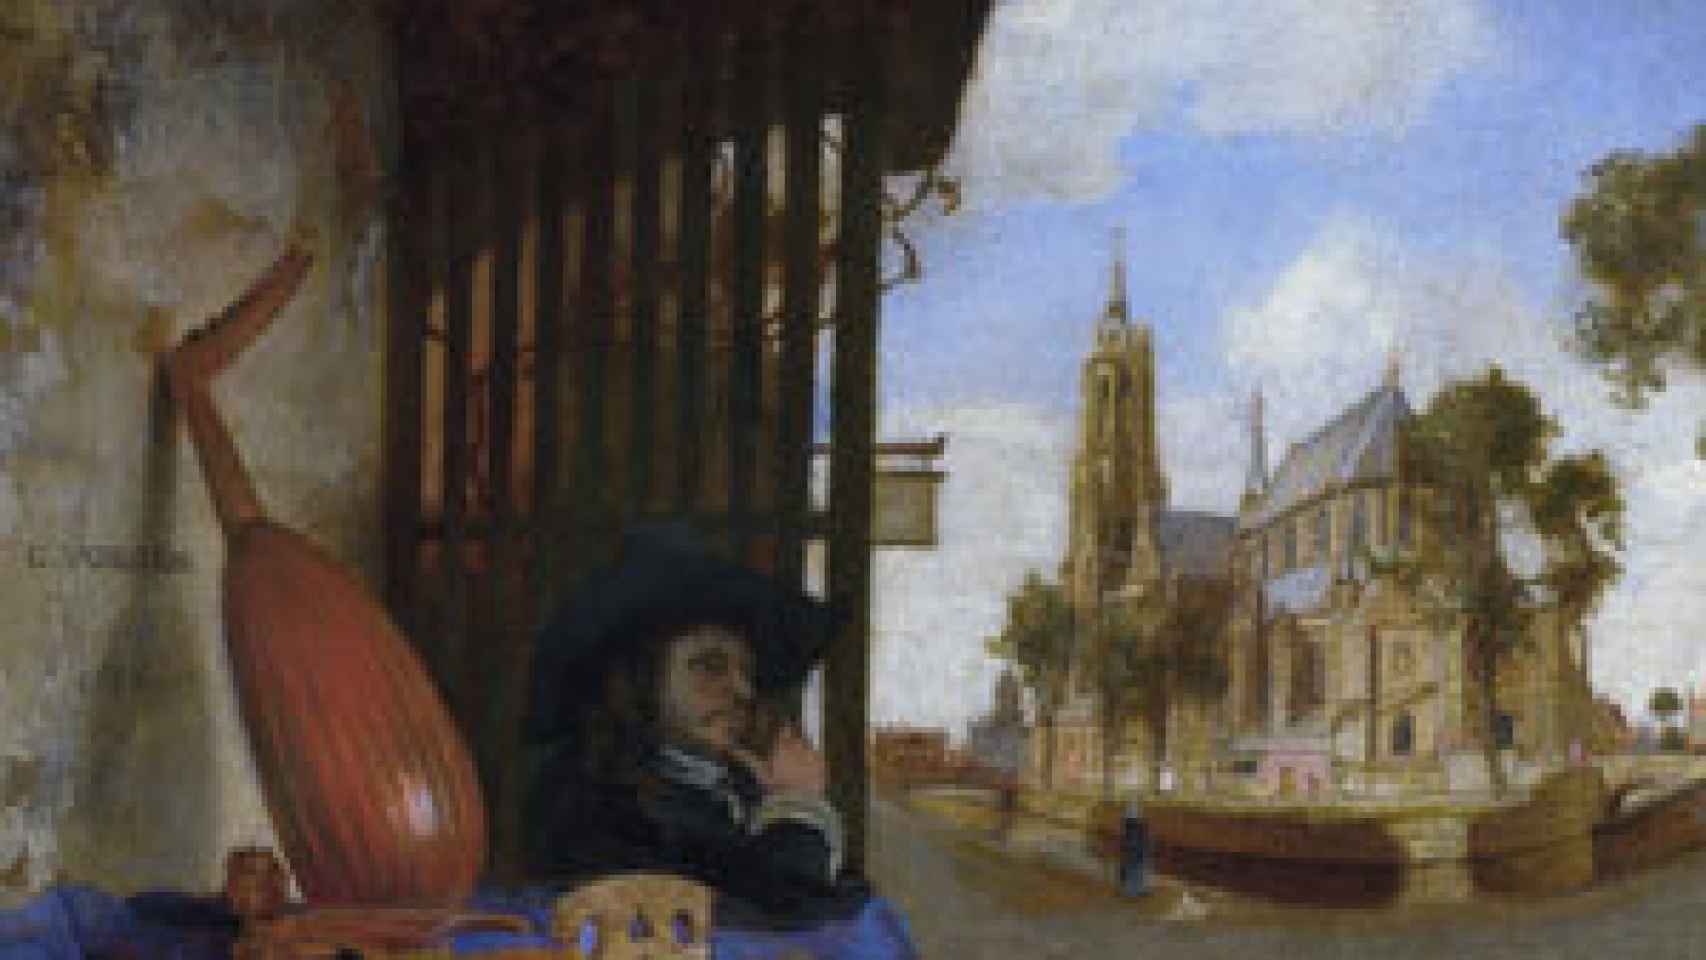 Image: El luthier de Delft. Música, pintura y ciencia en tiempos de Vermeer y Spinoza